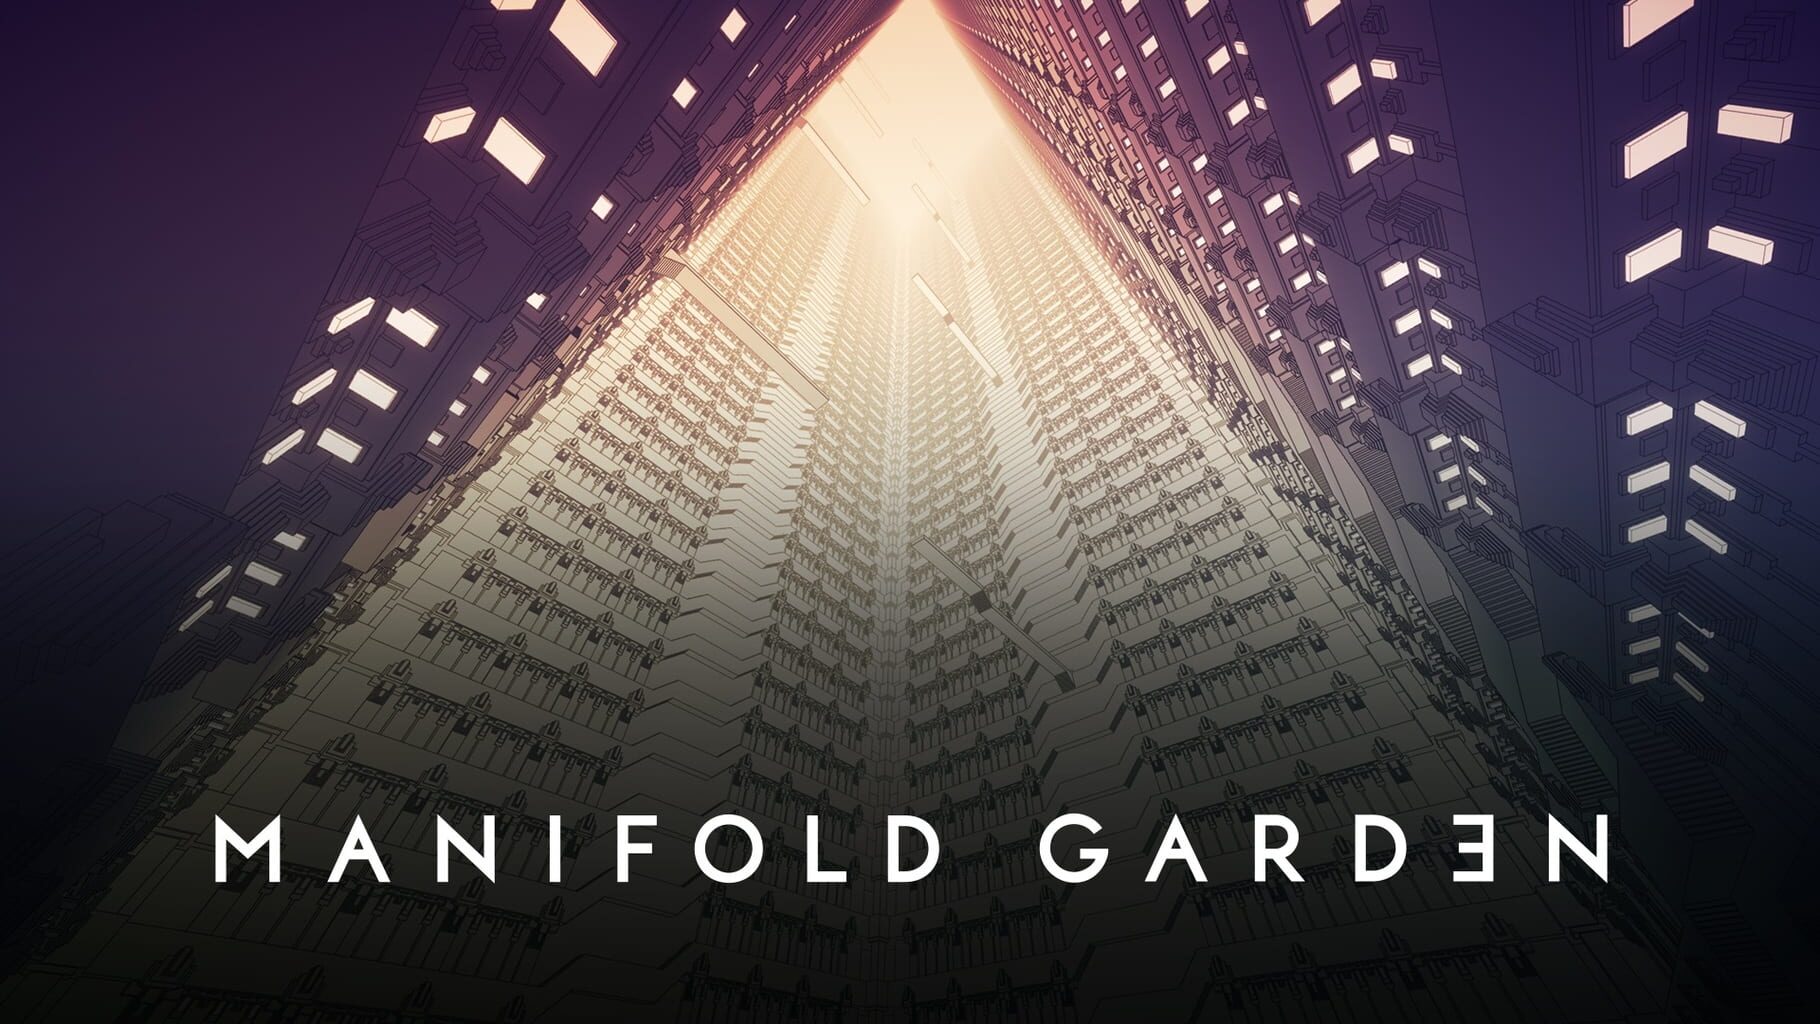 Arte - Manifold Garden